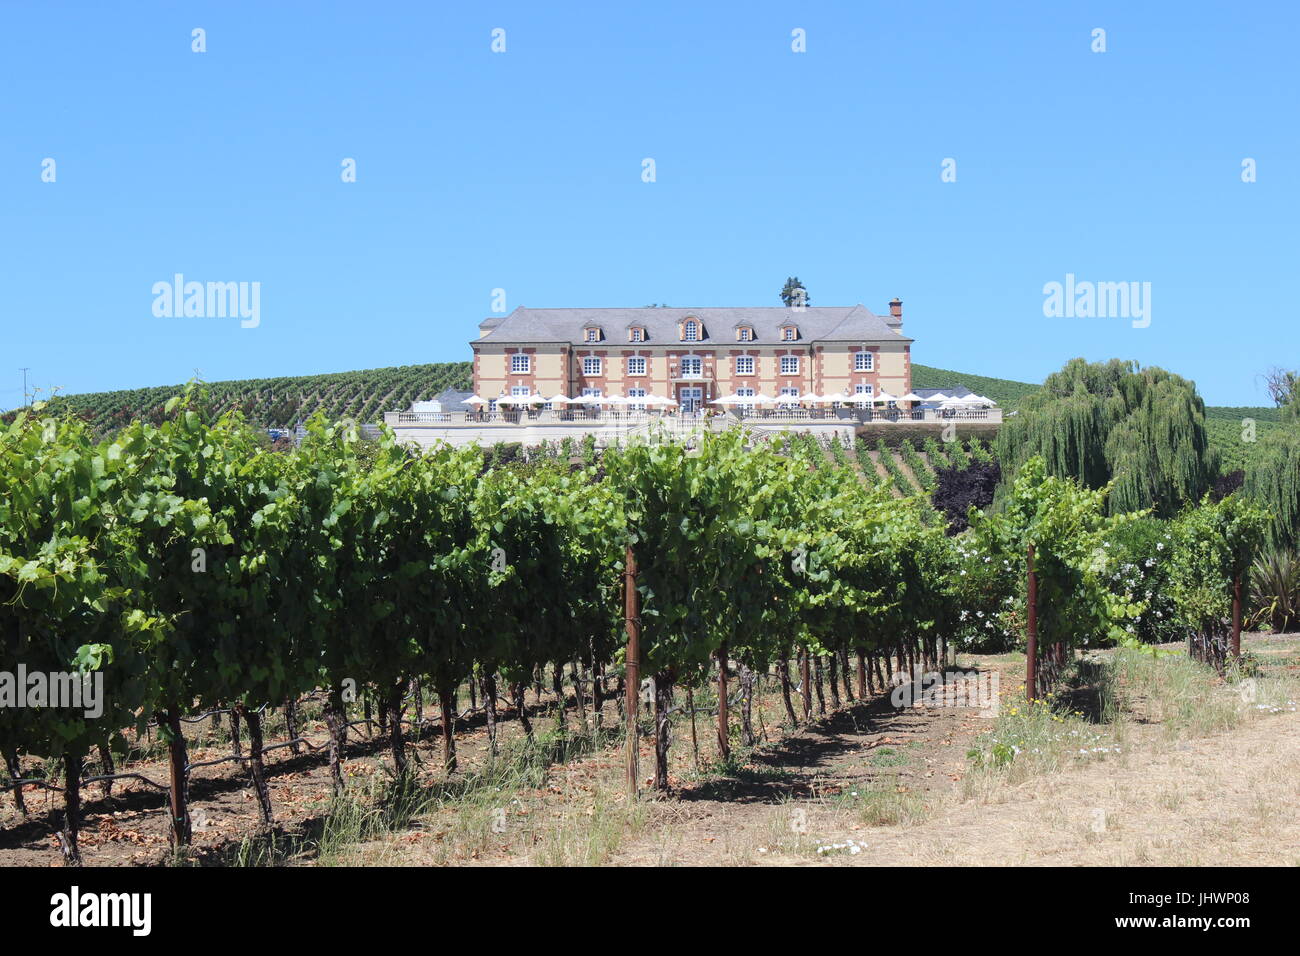 Domaine Carneros winery, Napa, California Stock Photo